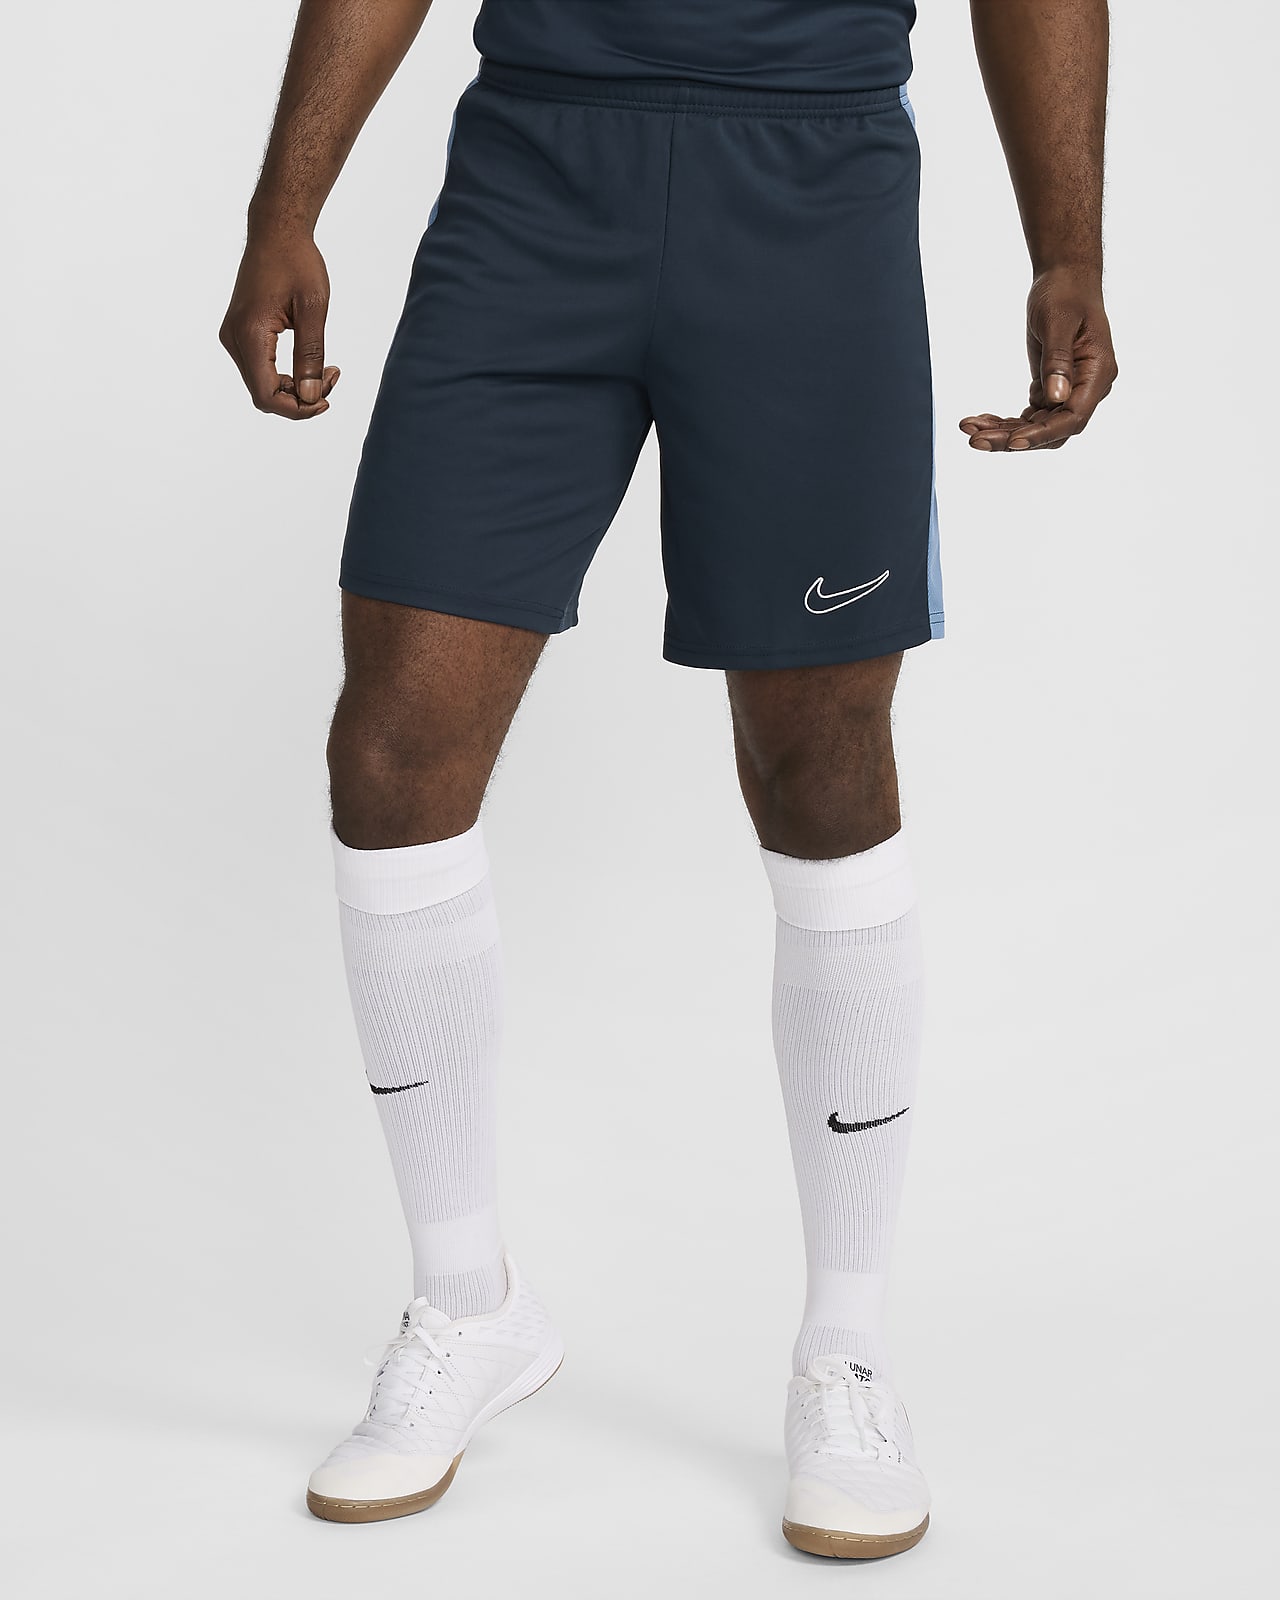 Calções de futebol Dri-FIT Nike Dri-FIT Academy para homem